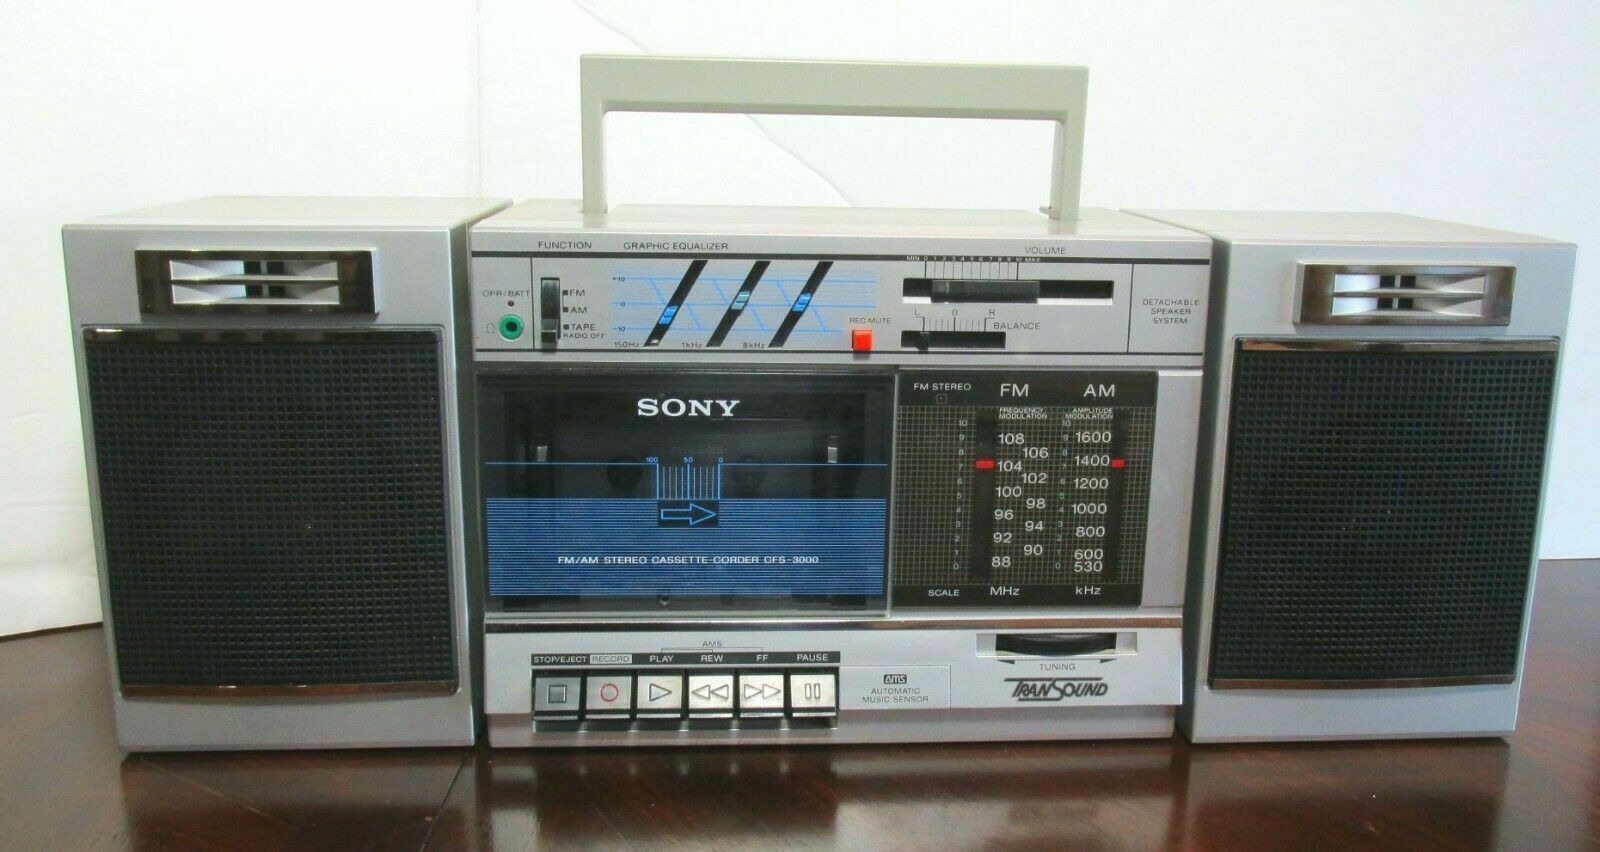 Thu mua đài radio cassette hỏng Thu mua đài radio cassette cũ hỏng giá cao tại Hà Nội